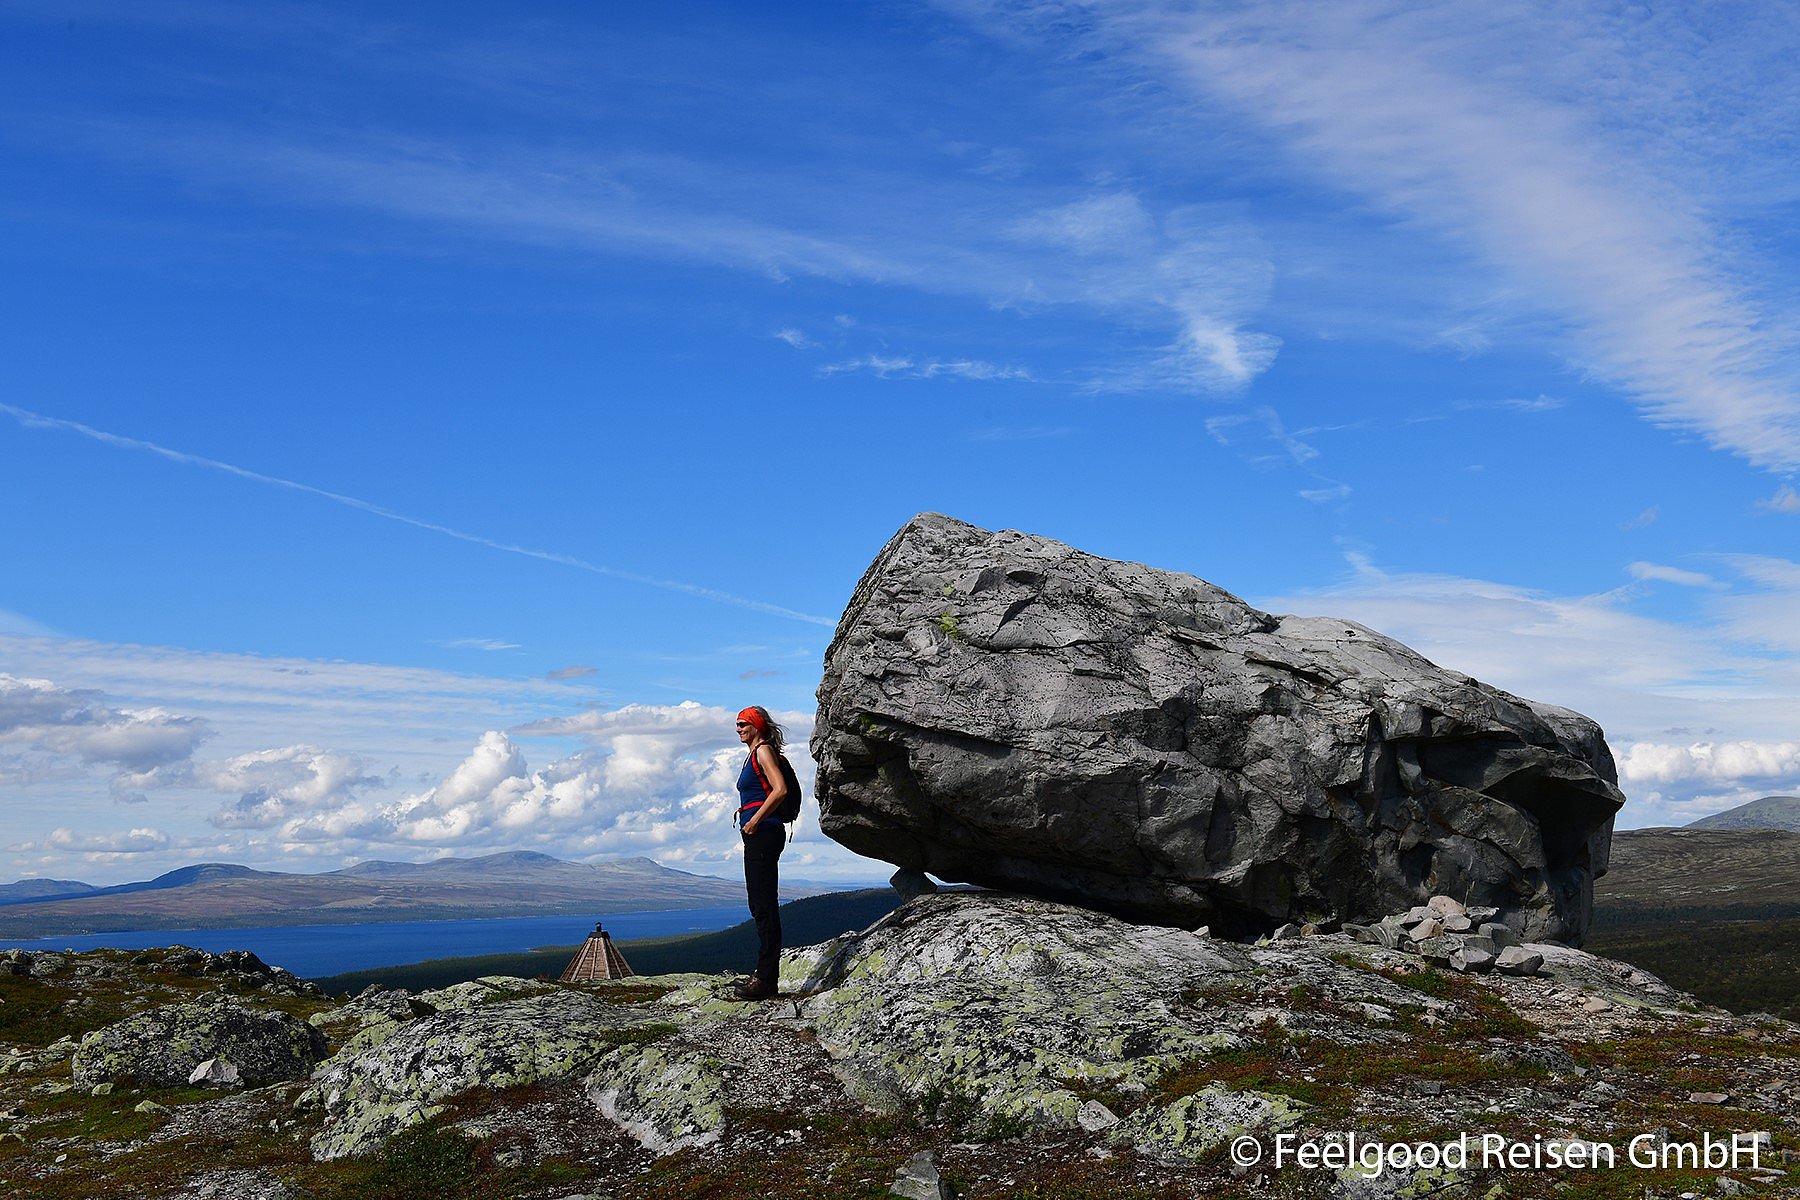 Eine Frau steht auf dem Gipfel eines Berges und betrachtet das Bergpanorama, hinter ihr befindet sich ein großer Fels